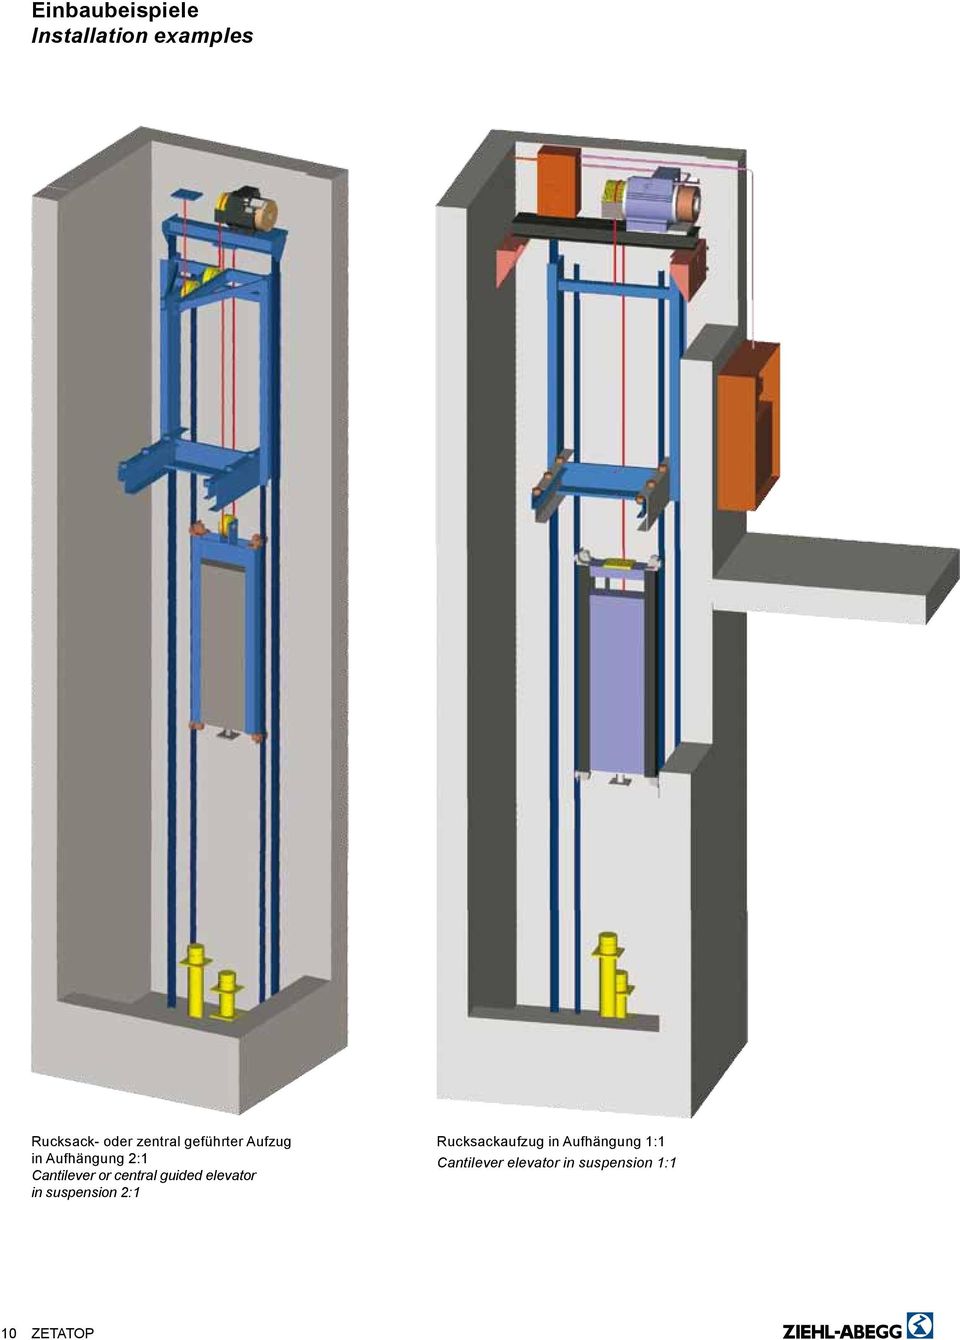 central guided elevator in suspension 2:1 Rucksackaufzug